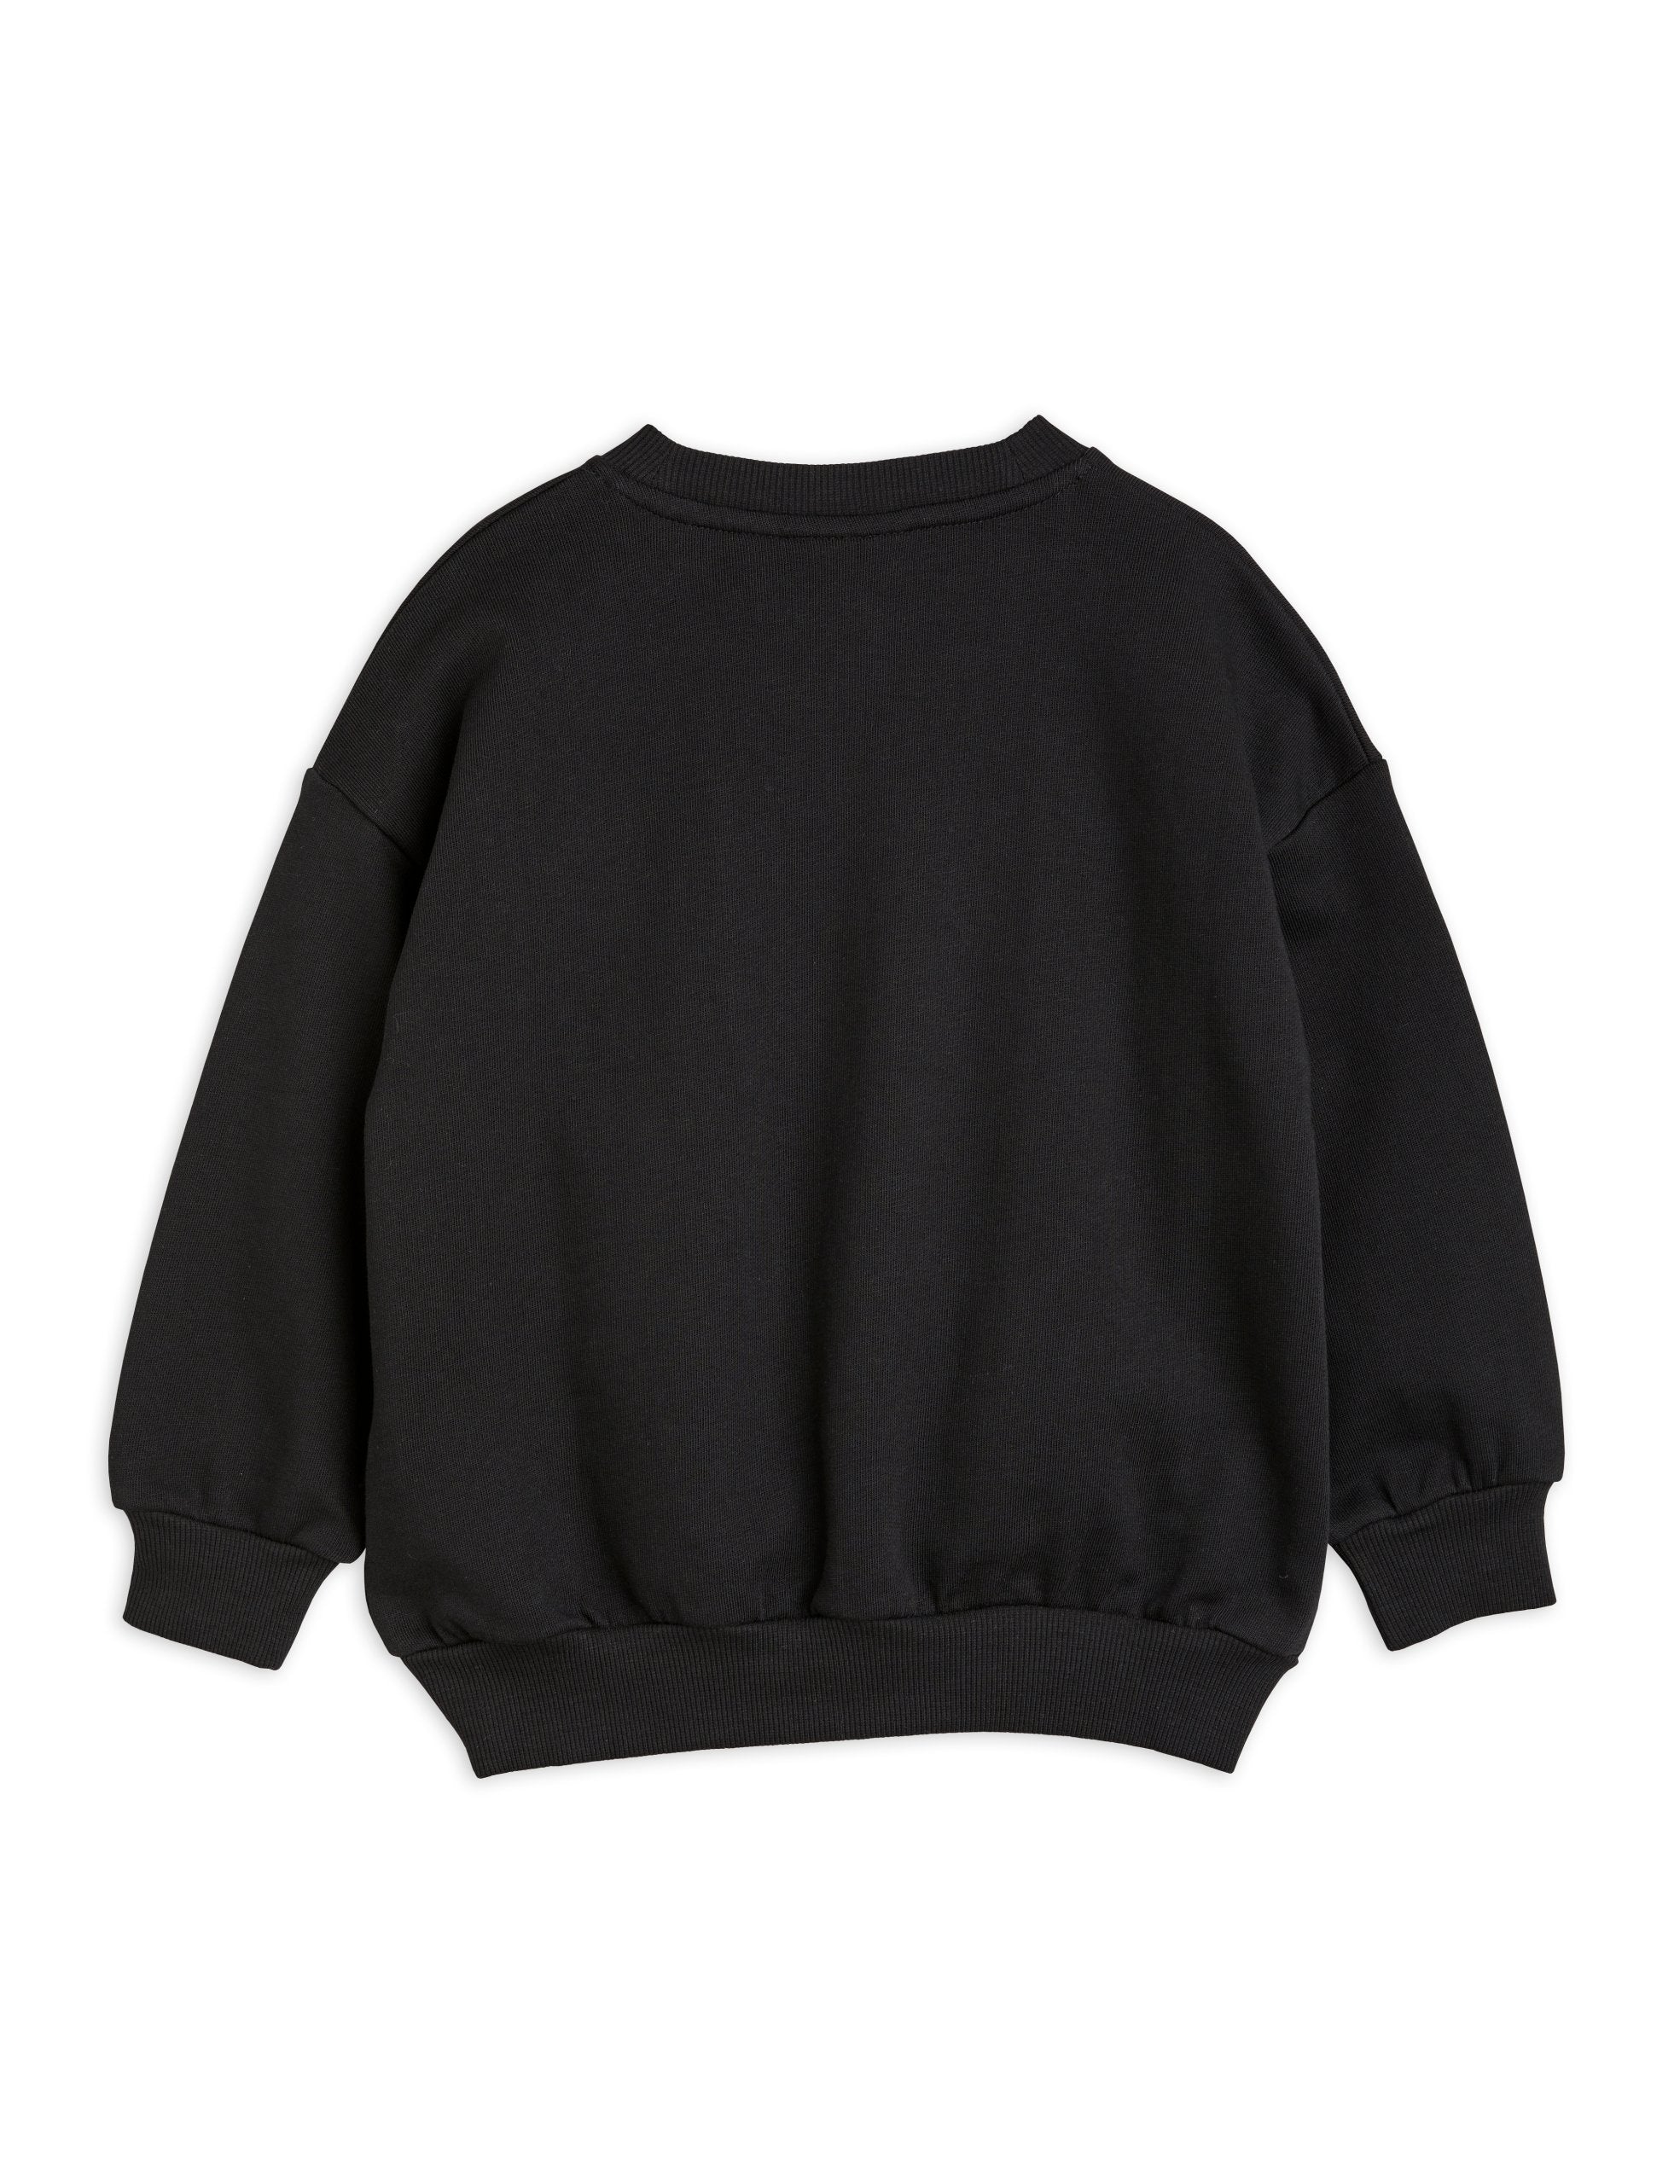 Radish chenille emb sweatshirt black